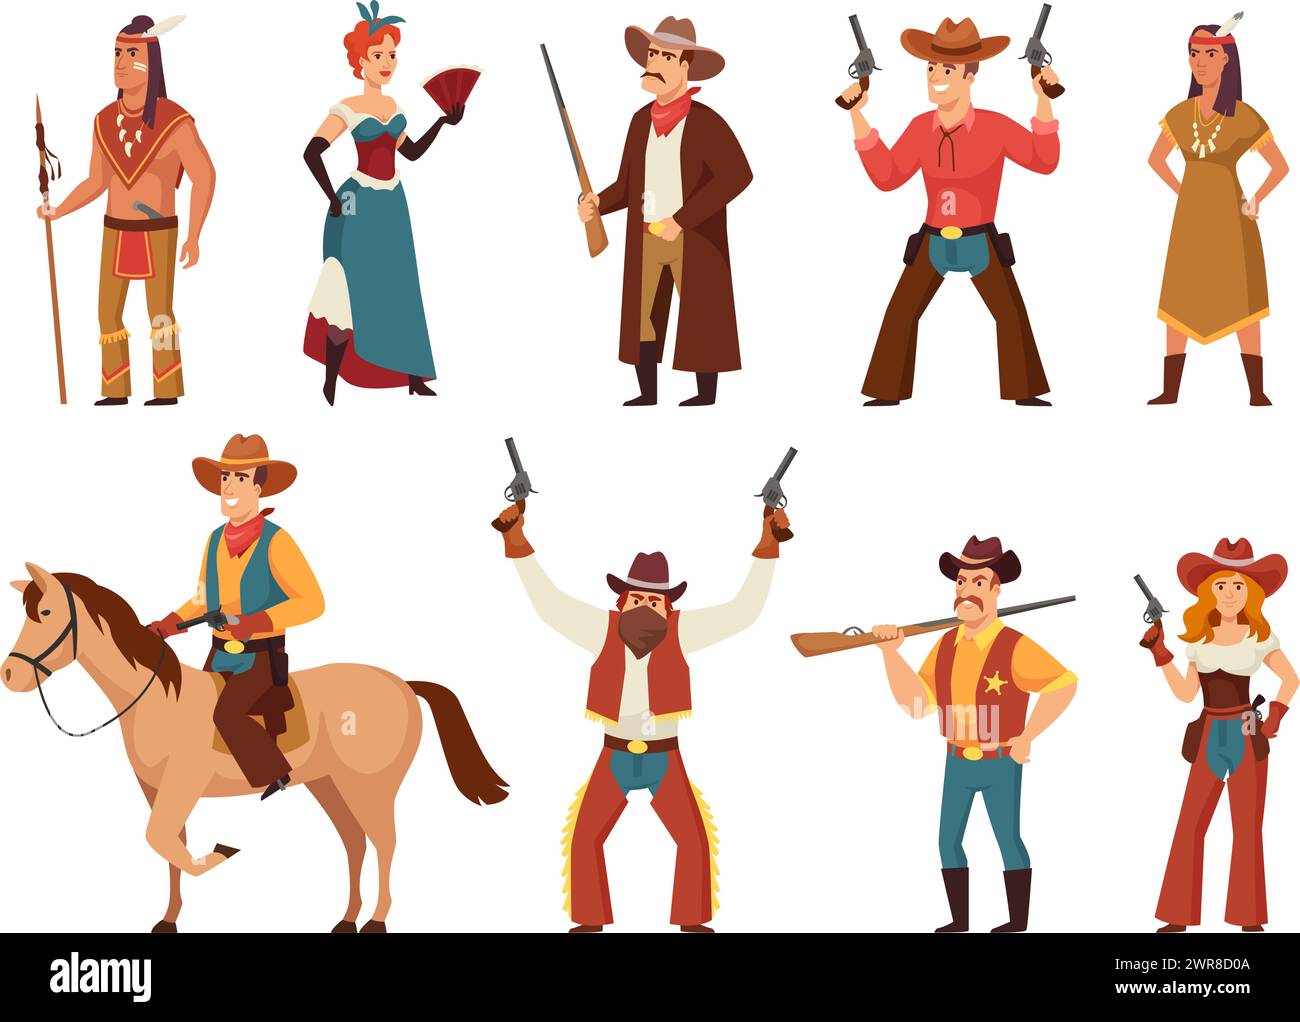 Zeichentrickfiguren des wilden Westens. Klassischer westlicher Cowboy und Cowgirl, indianischer Krieger, Saloon-Tänzer und Sheriff-Vektor-Illustration Set Stock Vektor